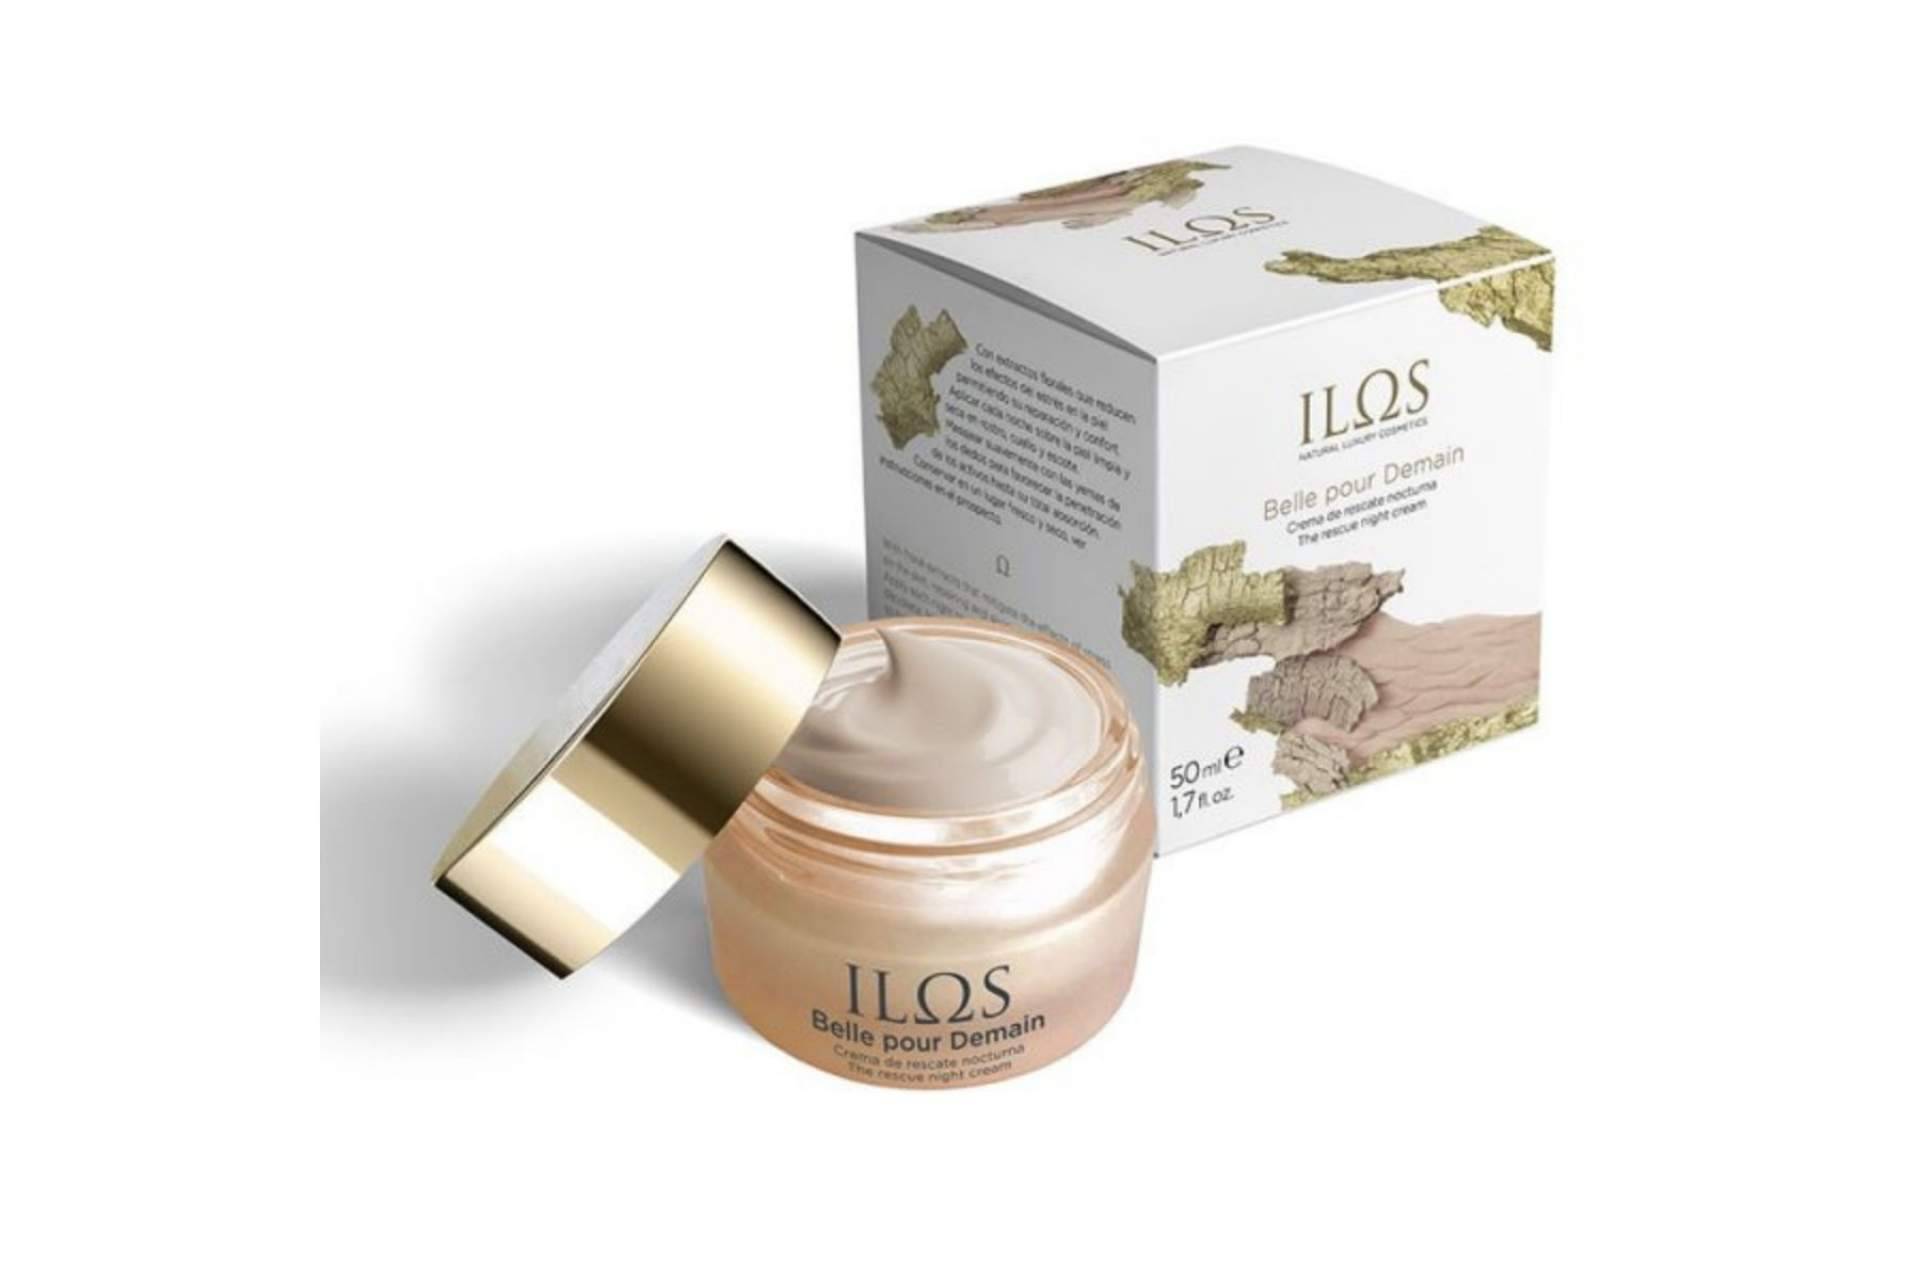 ILOS Natural Luxury Cosmetics lanza Belle pour Demain, una de las mejores cremas de noche del mercado